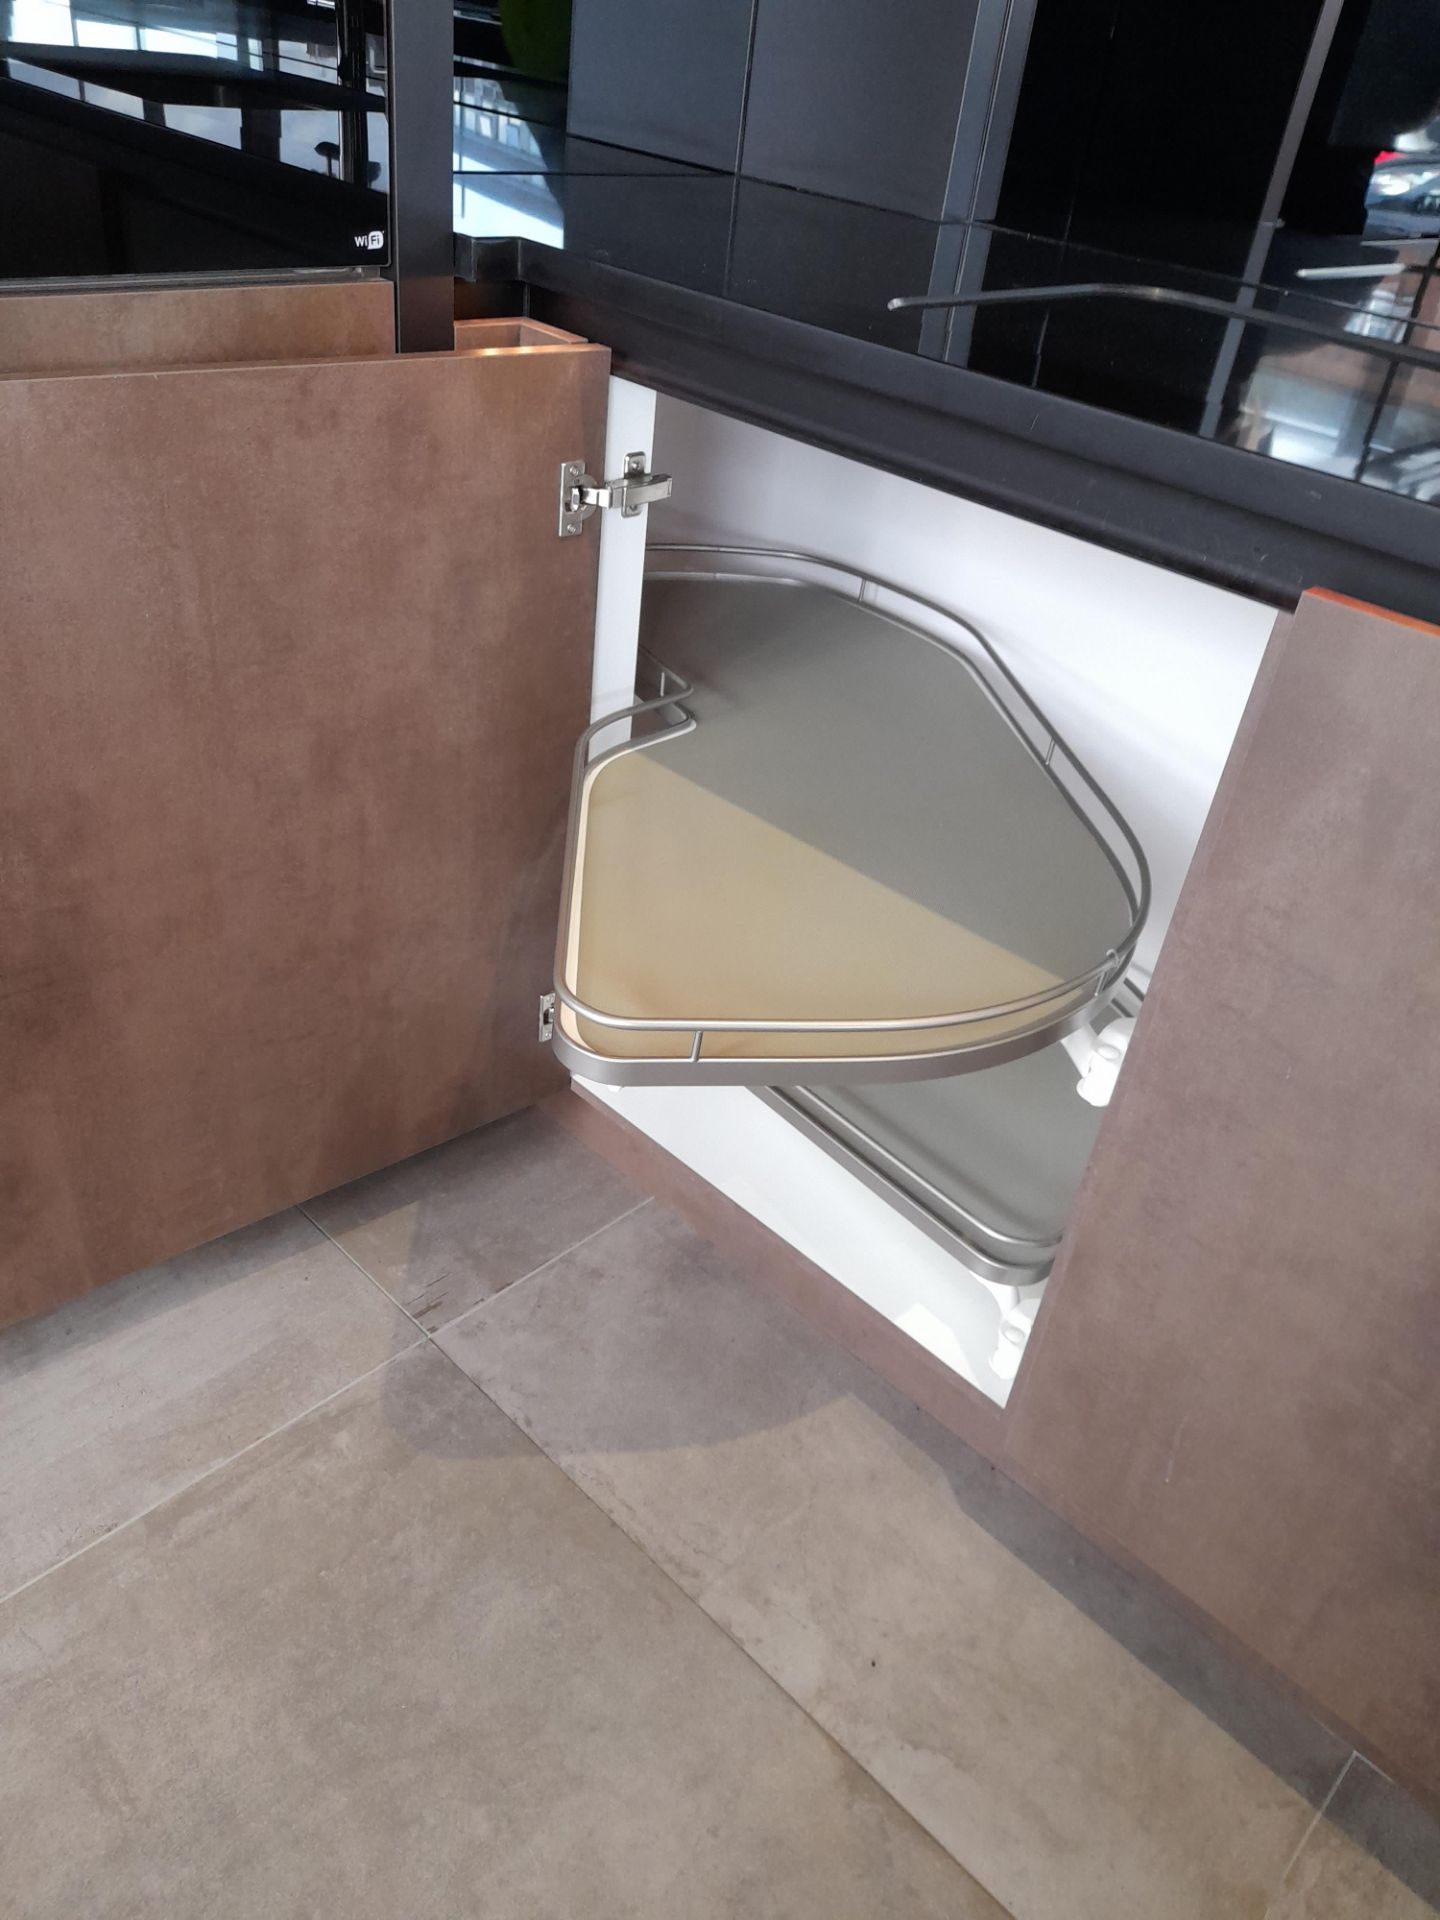 Pronorm Bronze kitchen suite, comprising Qu - Image 11 of 20